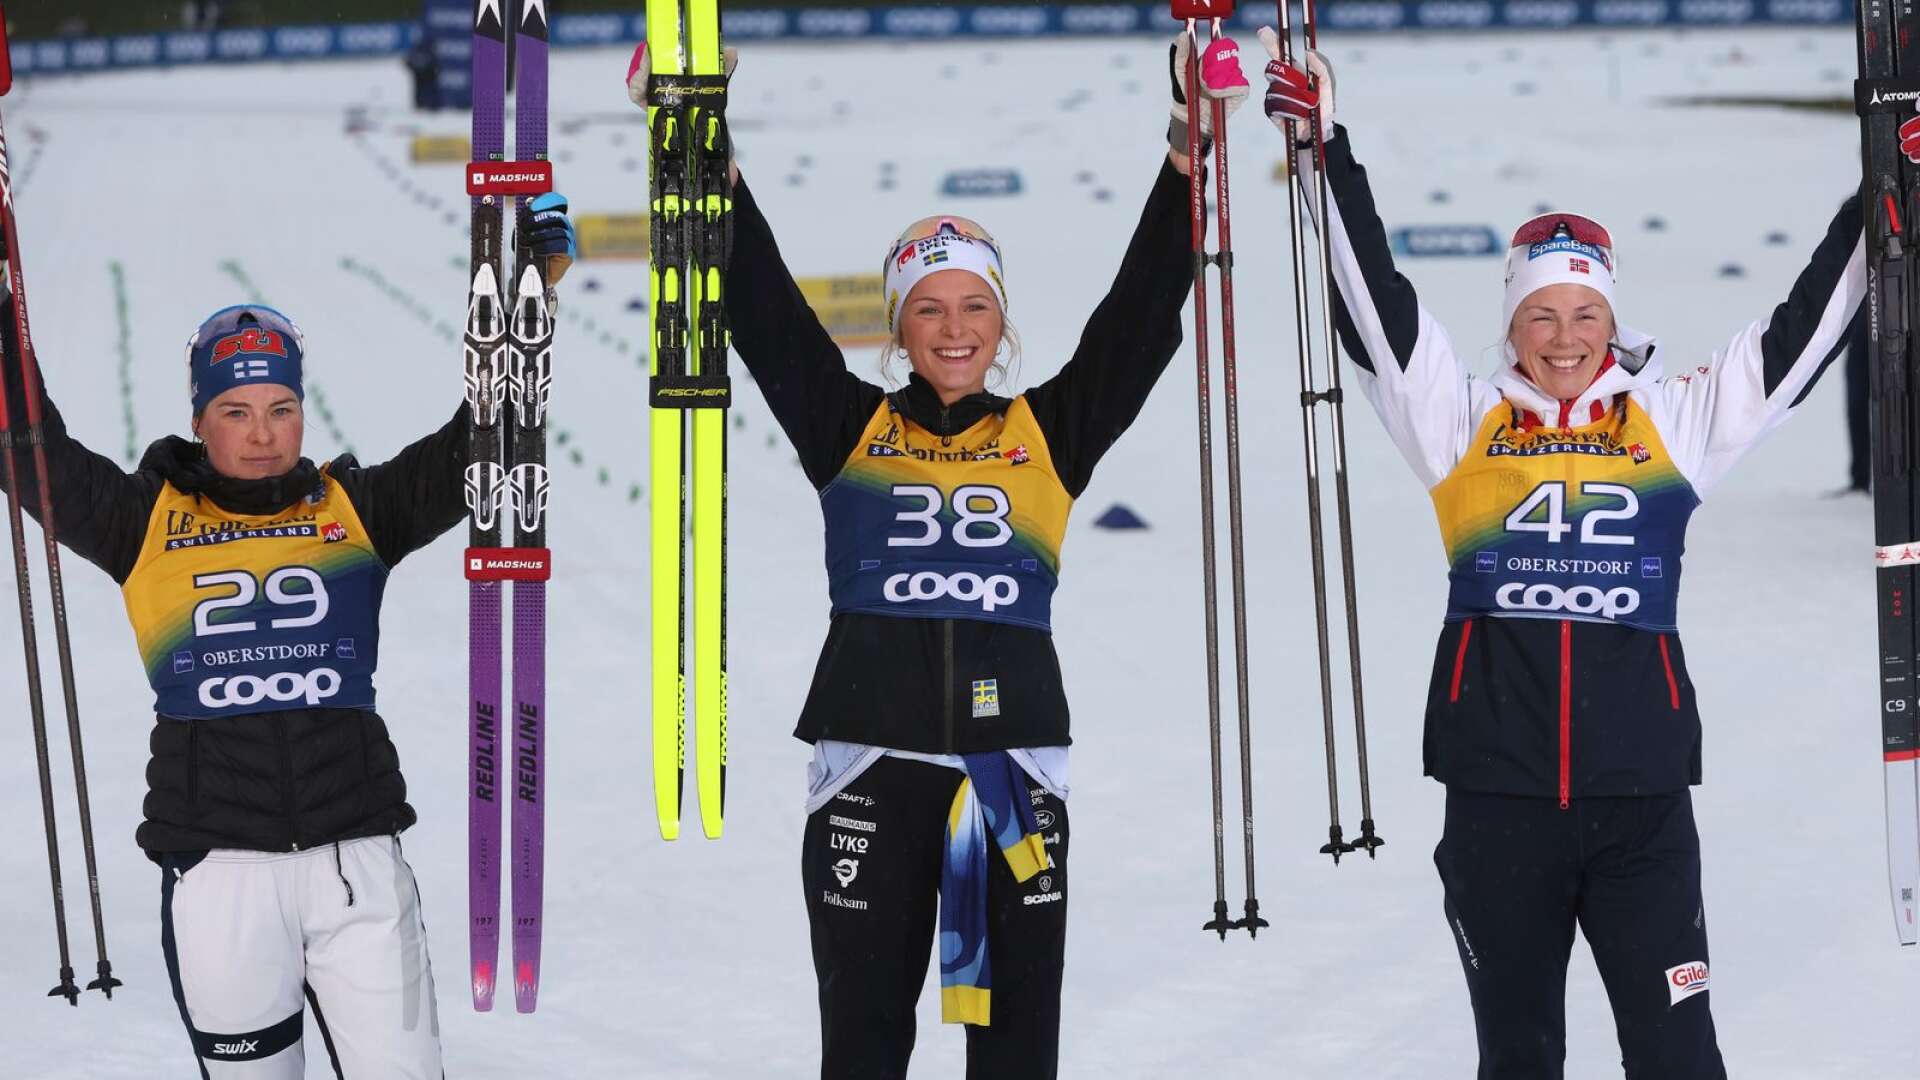 Frida Karlsson vann 10 kilometer klassiskt i Oberstdorf före Krista Parmakoski och Anne Kjersti Kalvaa, och leder nu Tour de Ski efter tre etapper.